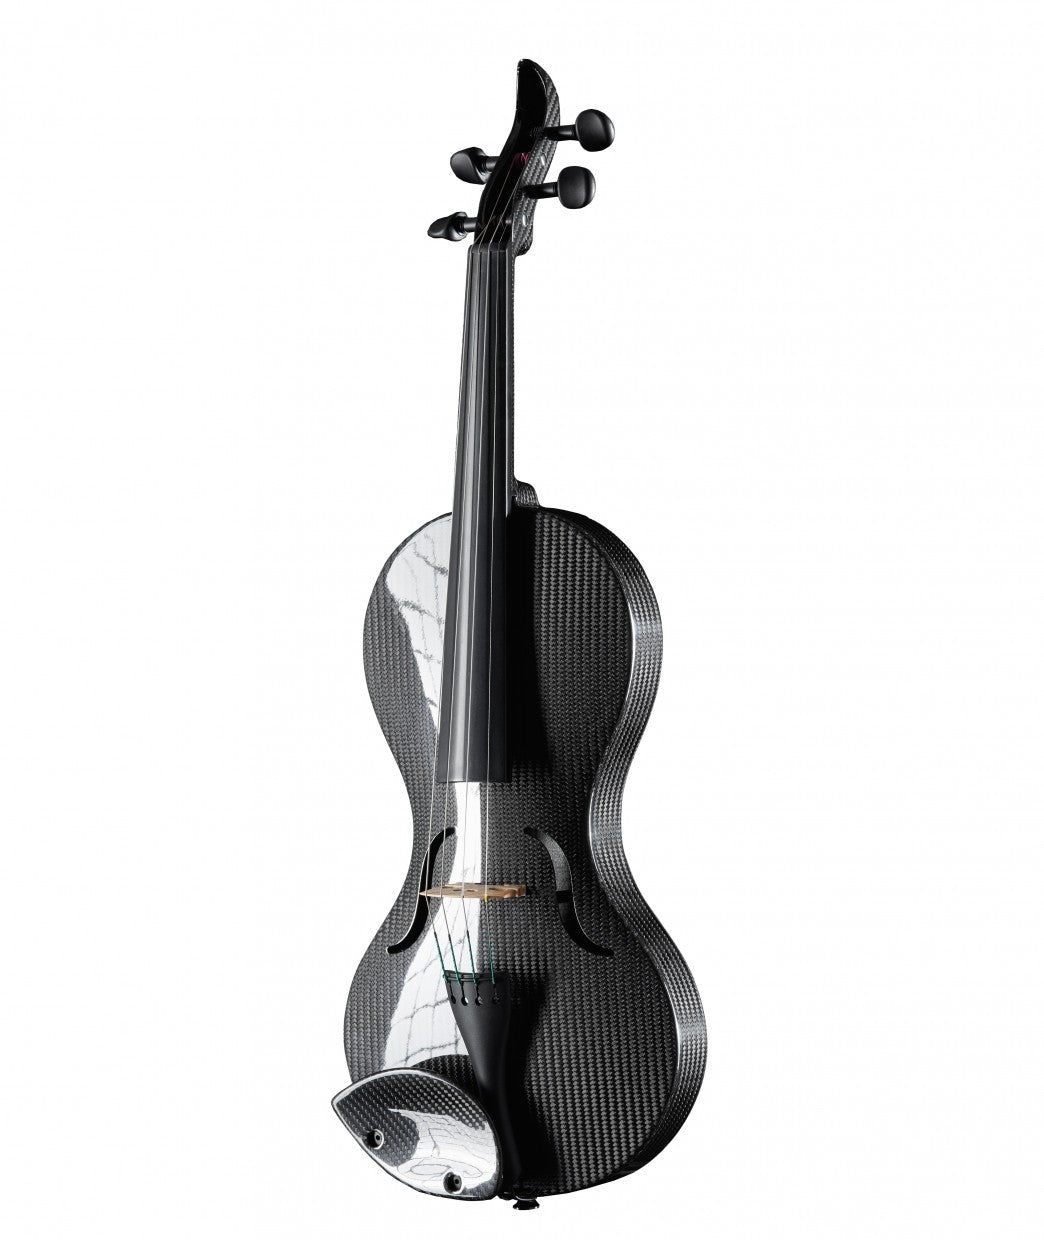 Carbon violin "Hybrid Line" German Musical Instrument Prize 2015